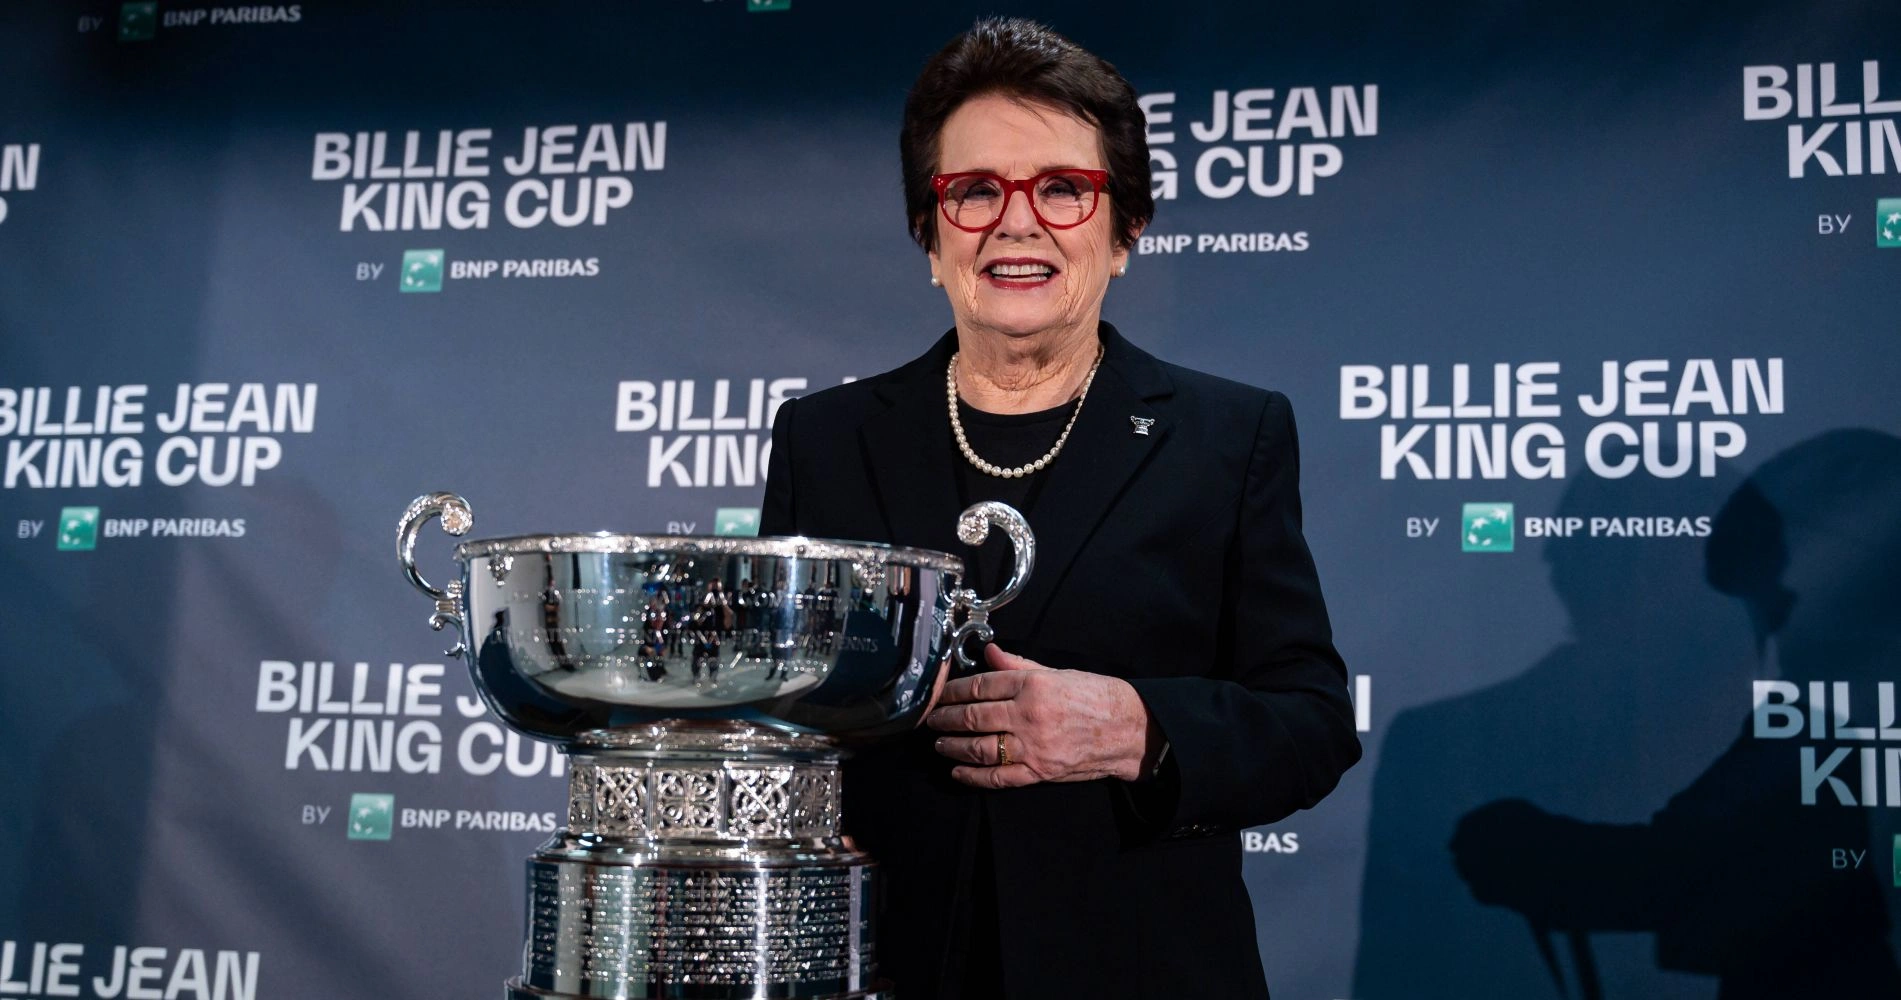 Billie Jean King Cup Trofeo.png (260 KB)